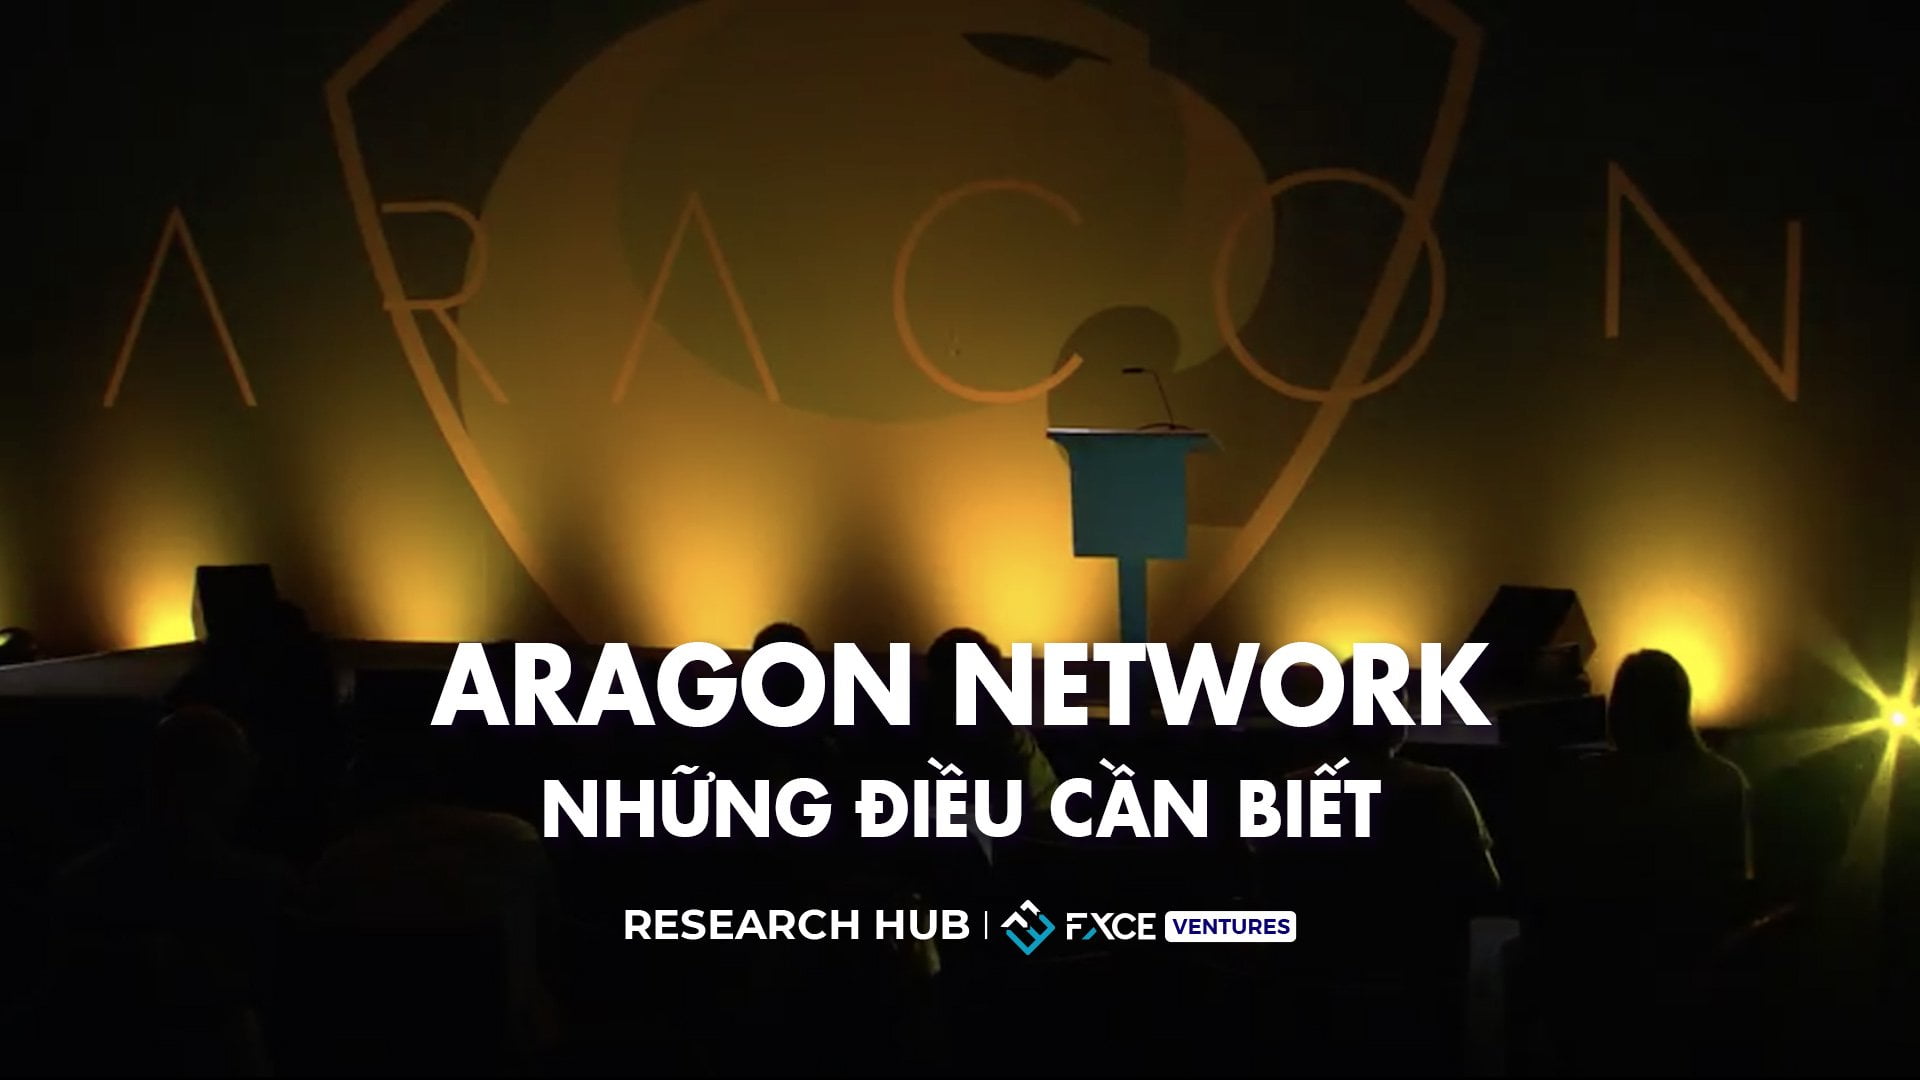 Aragon Network là gì? Những điều cần biết về Aragon